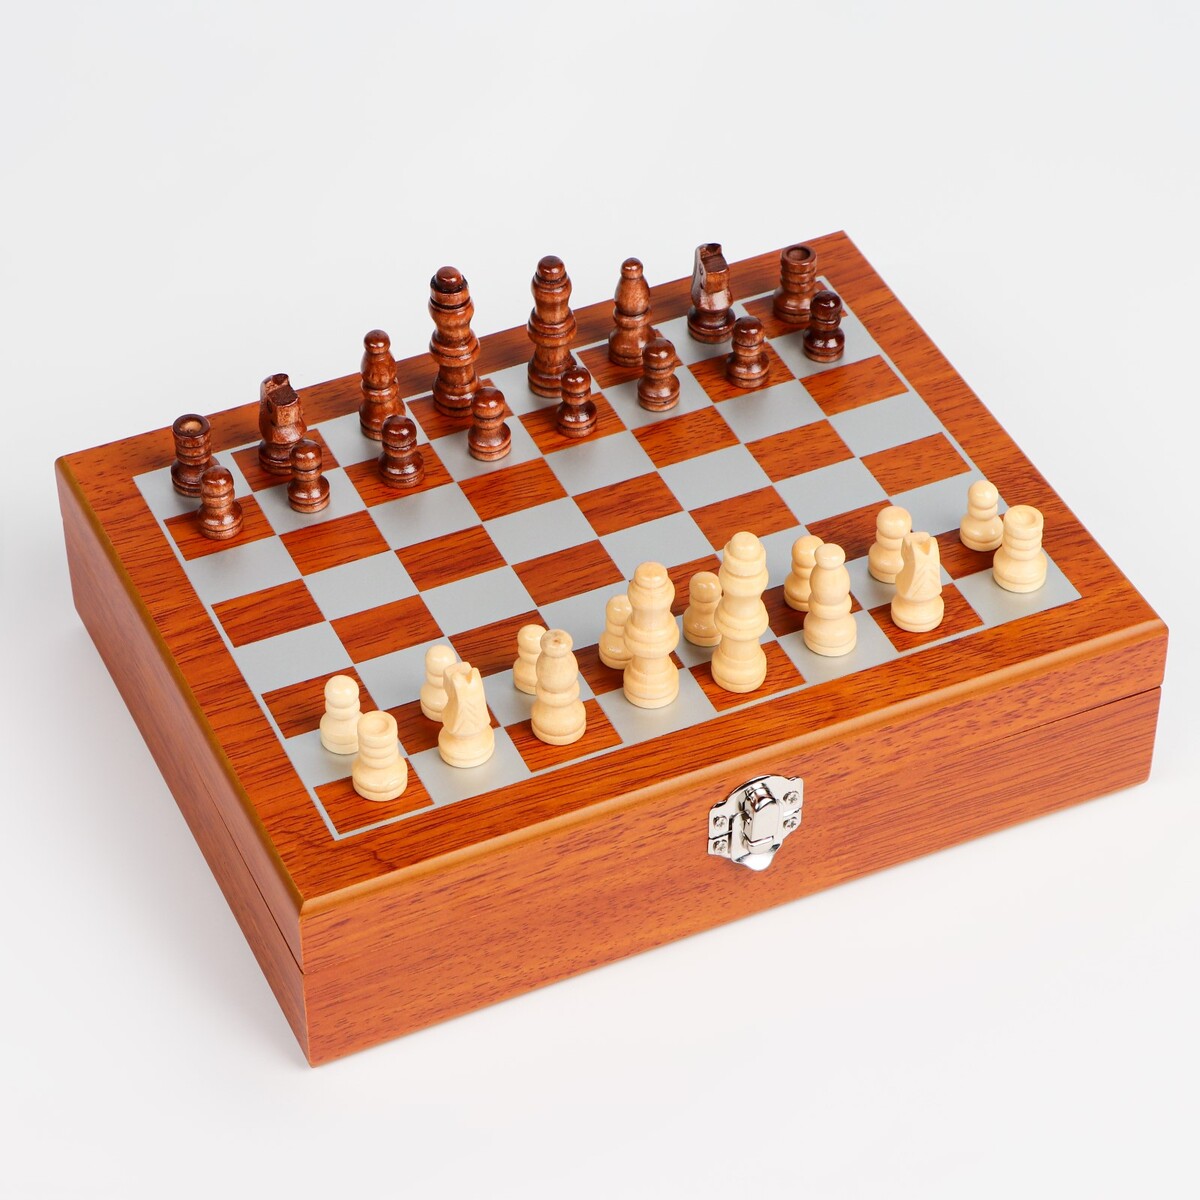 Набор 6 в 1: фляжка 8 oz, рюмка, воронка, кубики 5 шт, карты, шахматы, 18 х 24 см набор 4 в 1 шахматы домино 2 колоды карт 25 х 25 см